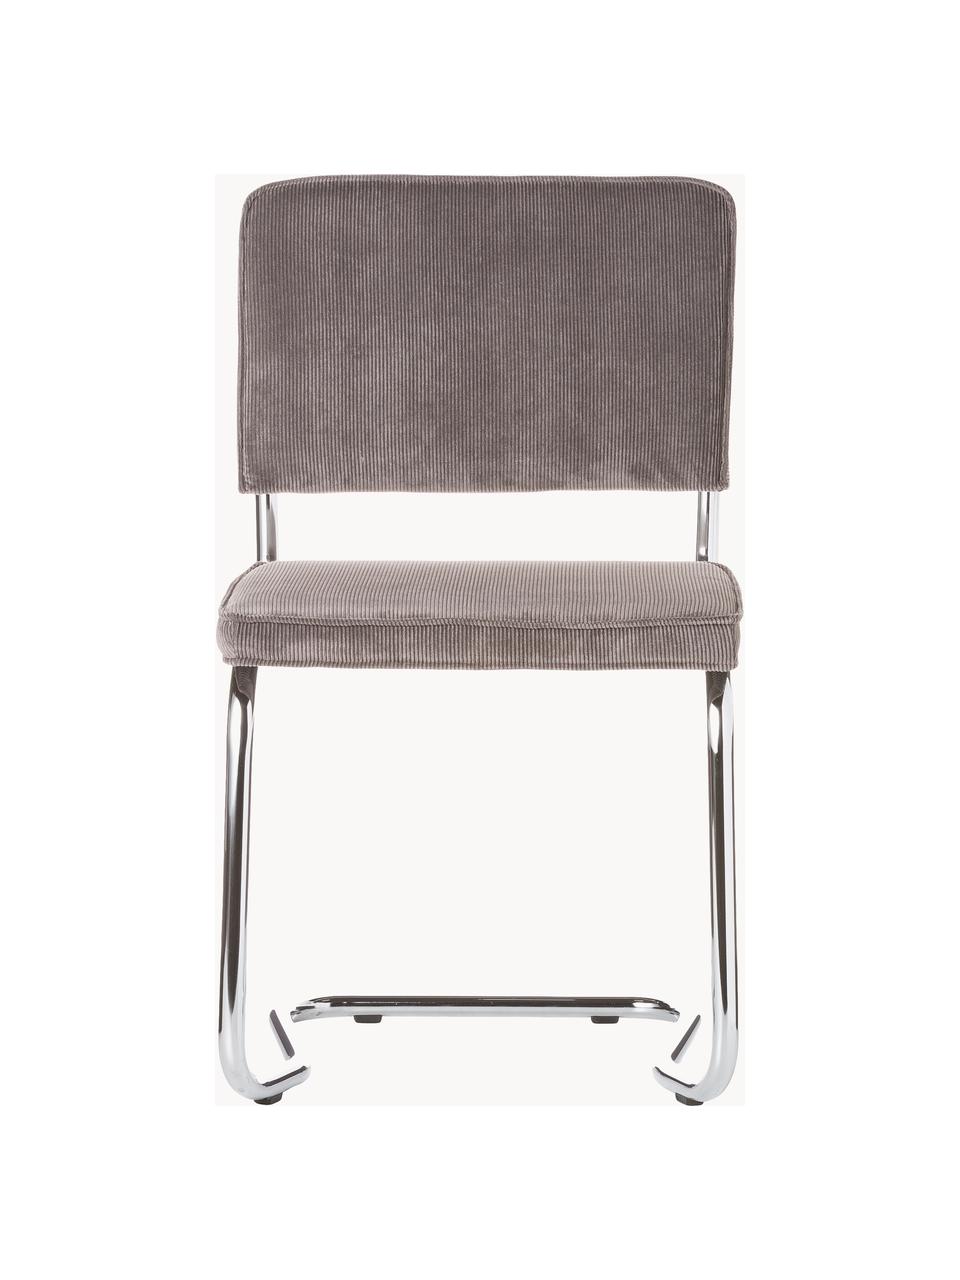 Manšestrová konzolová židle Kink, Taupe, lesklá stříbrná, Š 48 cm, H 48 cm